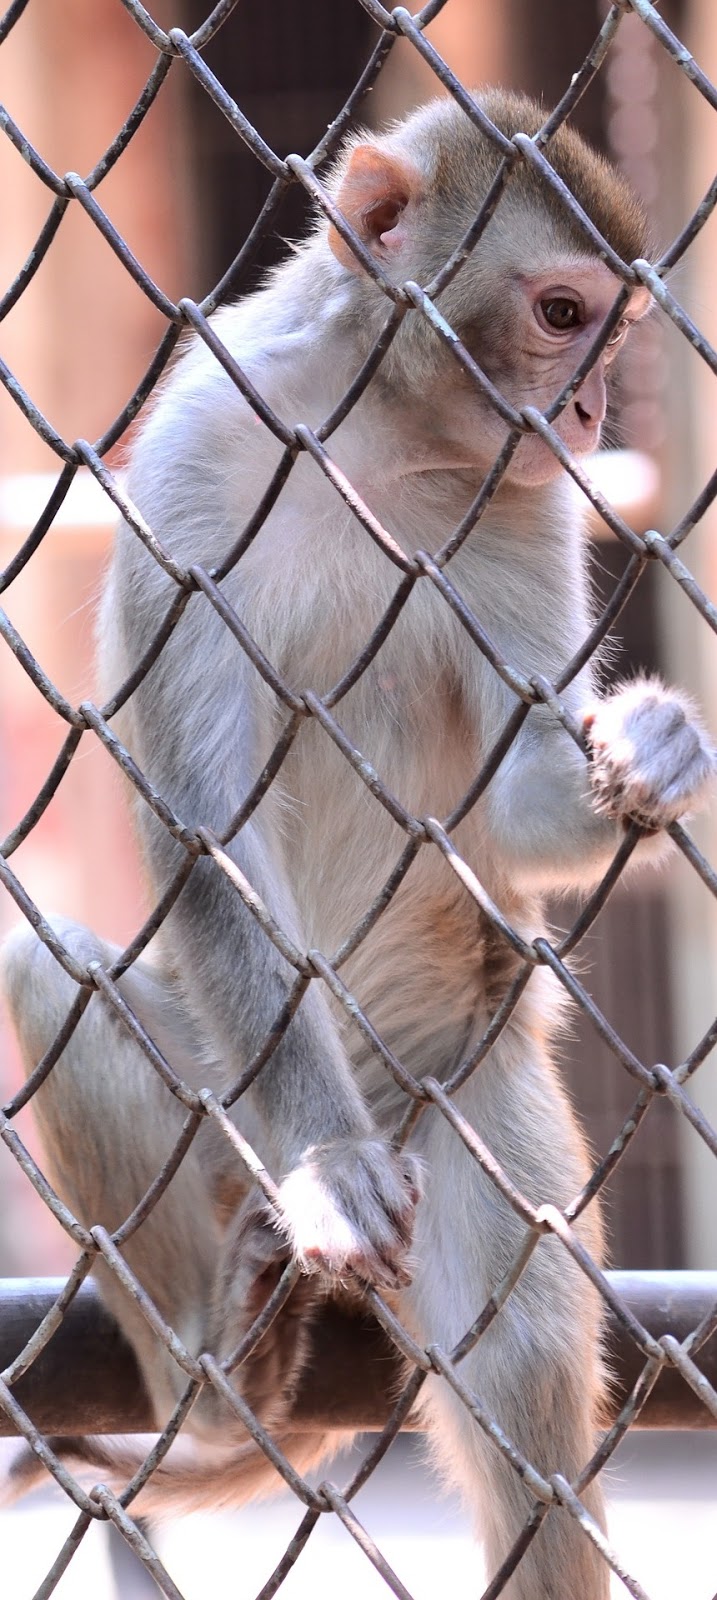 Caged monkey.